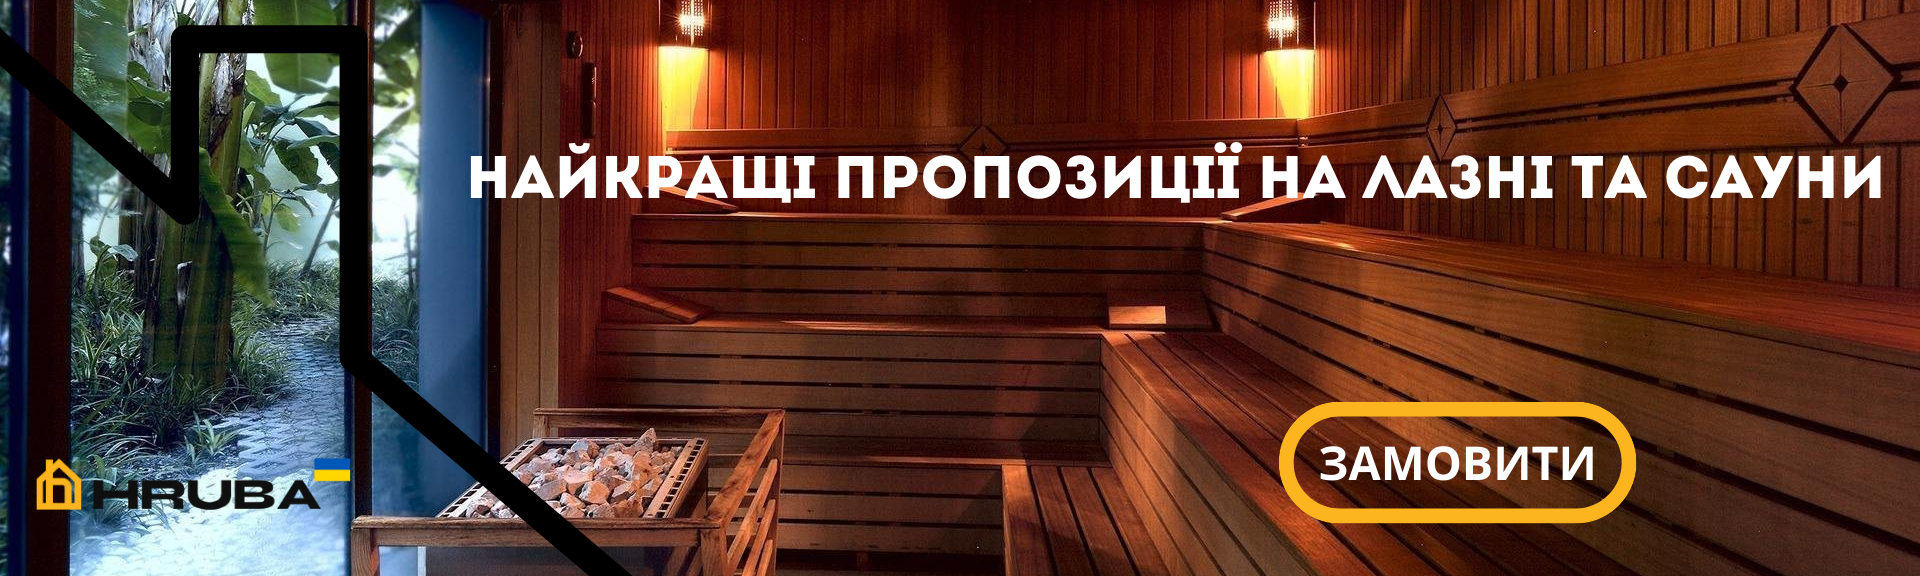 Найкращі пропозиції на лазні та сауни купити в Києві по вигідній ціні (073) 35 35 487 | HRUBA